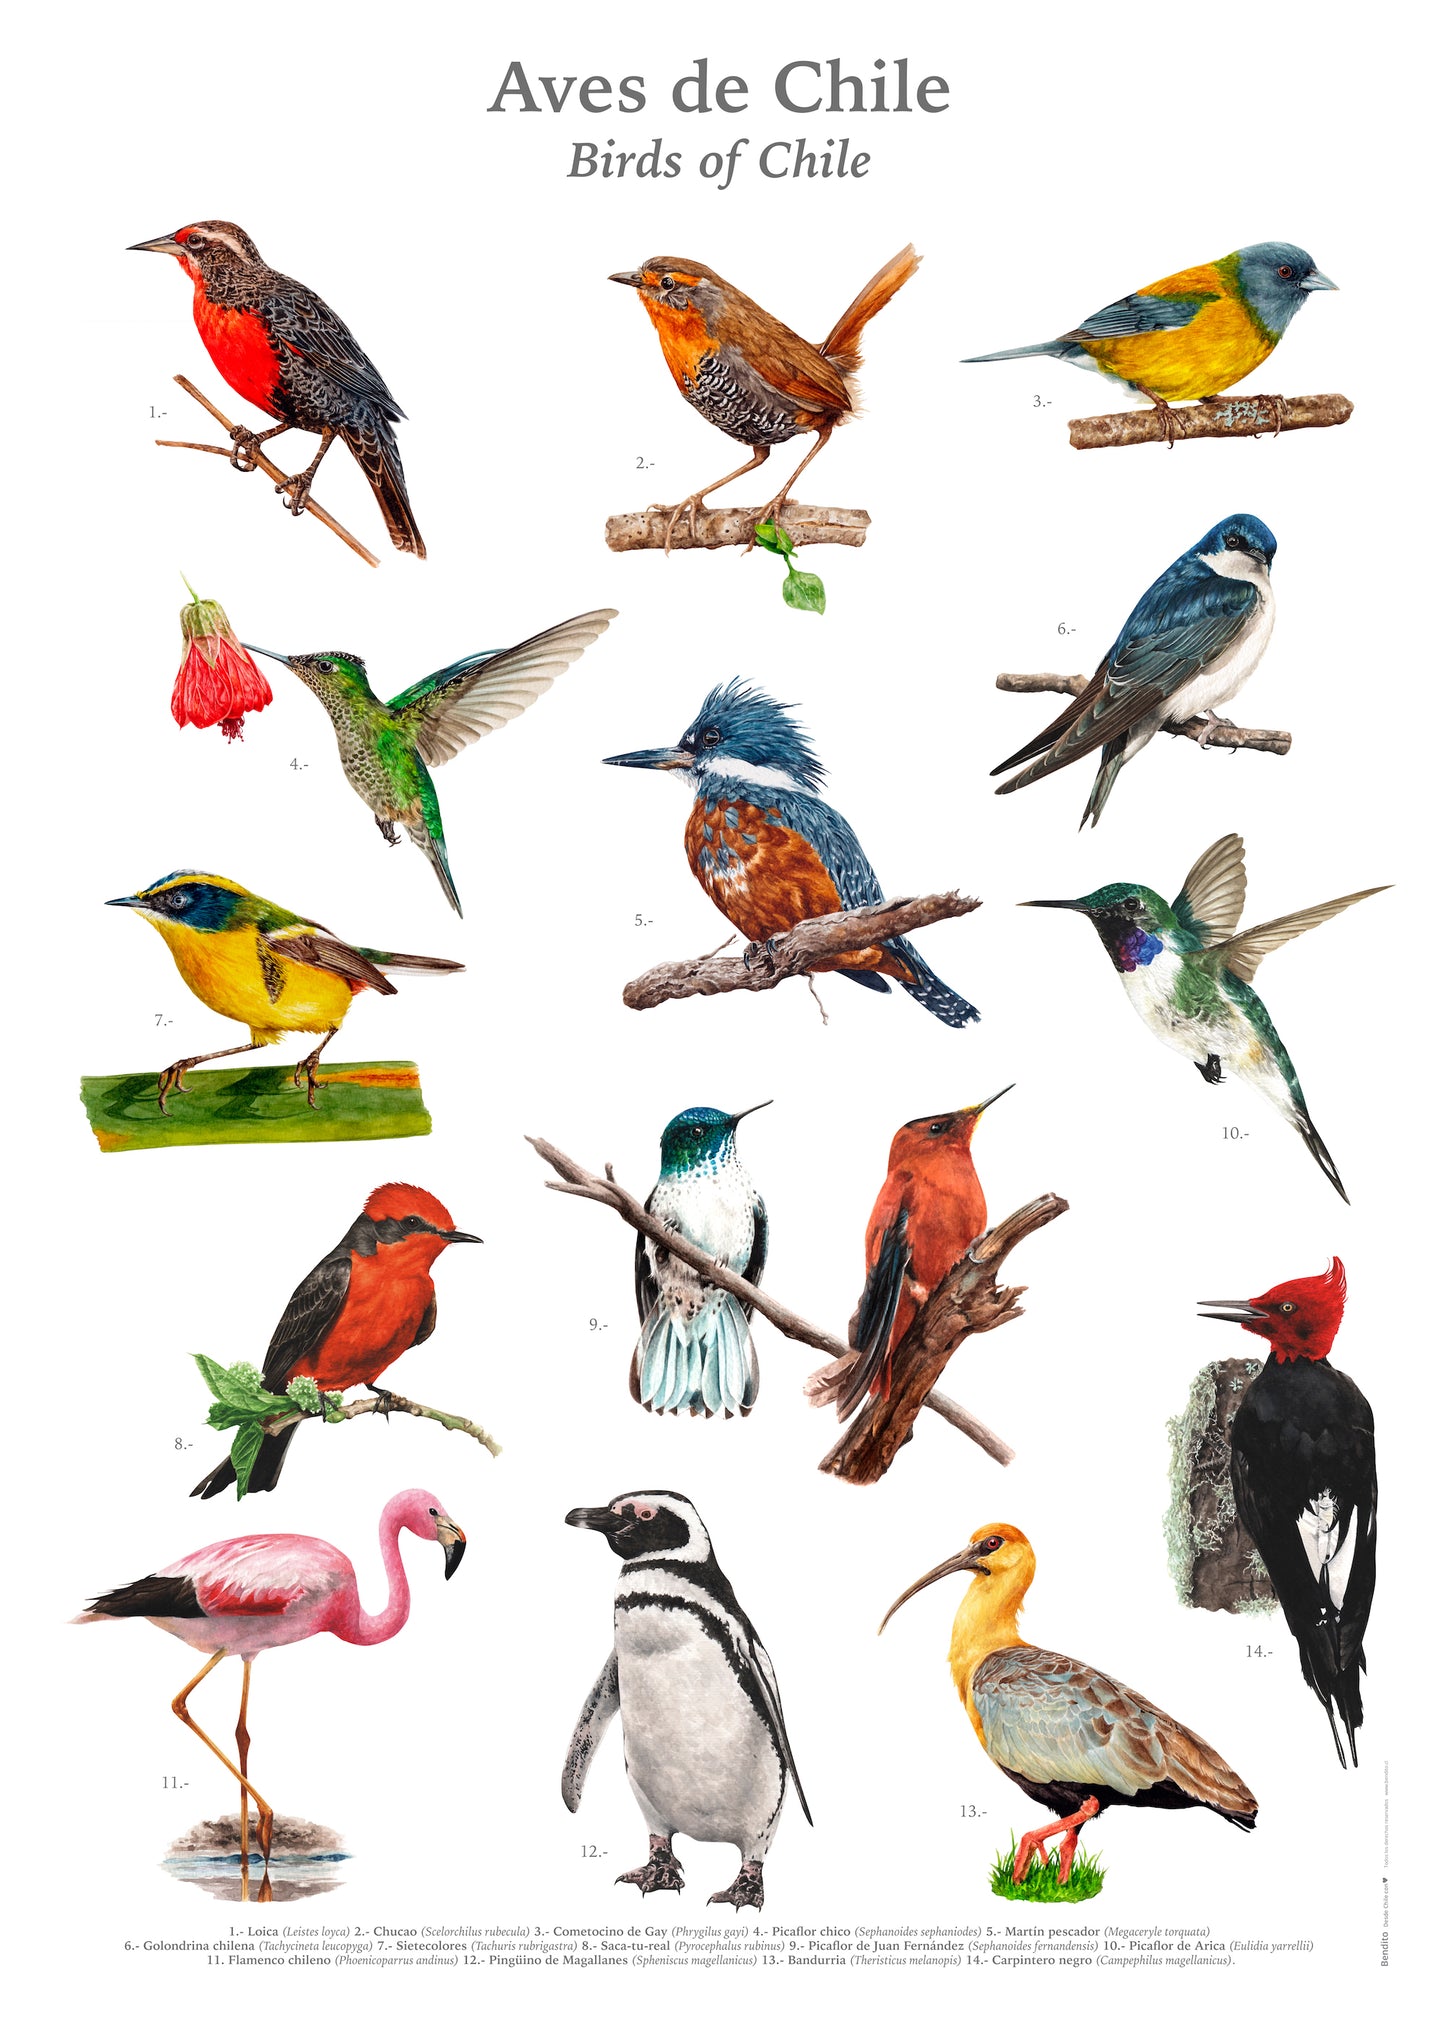 Afiche Aves de Chile 50 x 70 cms.